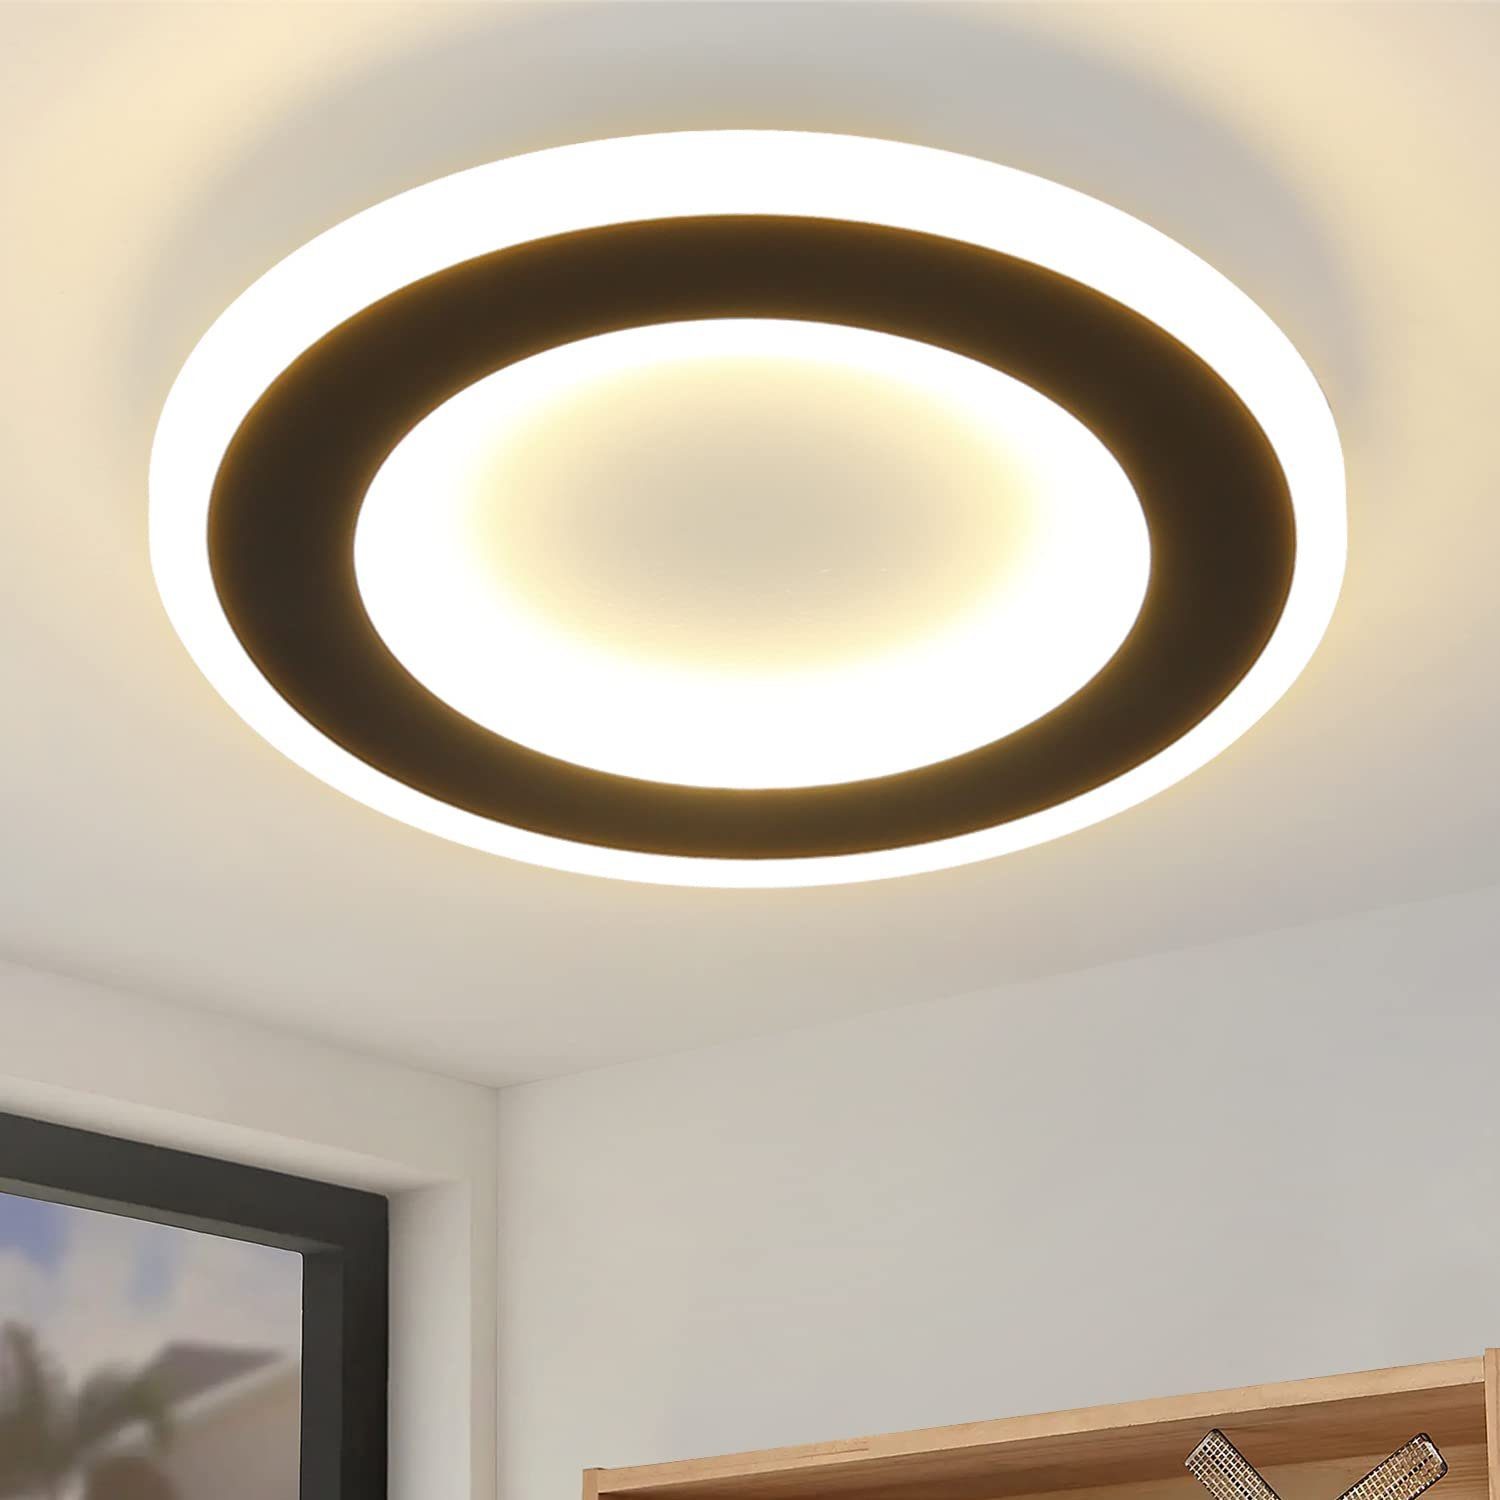 ZMH LED Deckenleuchte »Schwarz und Weiß Flurlampe 24cm«, Warmweiß  Deckenbeleuchtung Rund Wohnzimmerlampe für Küche Flur Wohnzimmer  Kinderzimmer, Rund, 20W